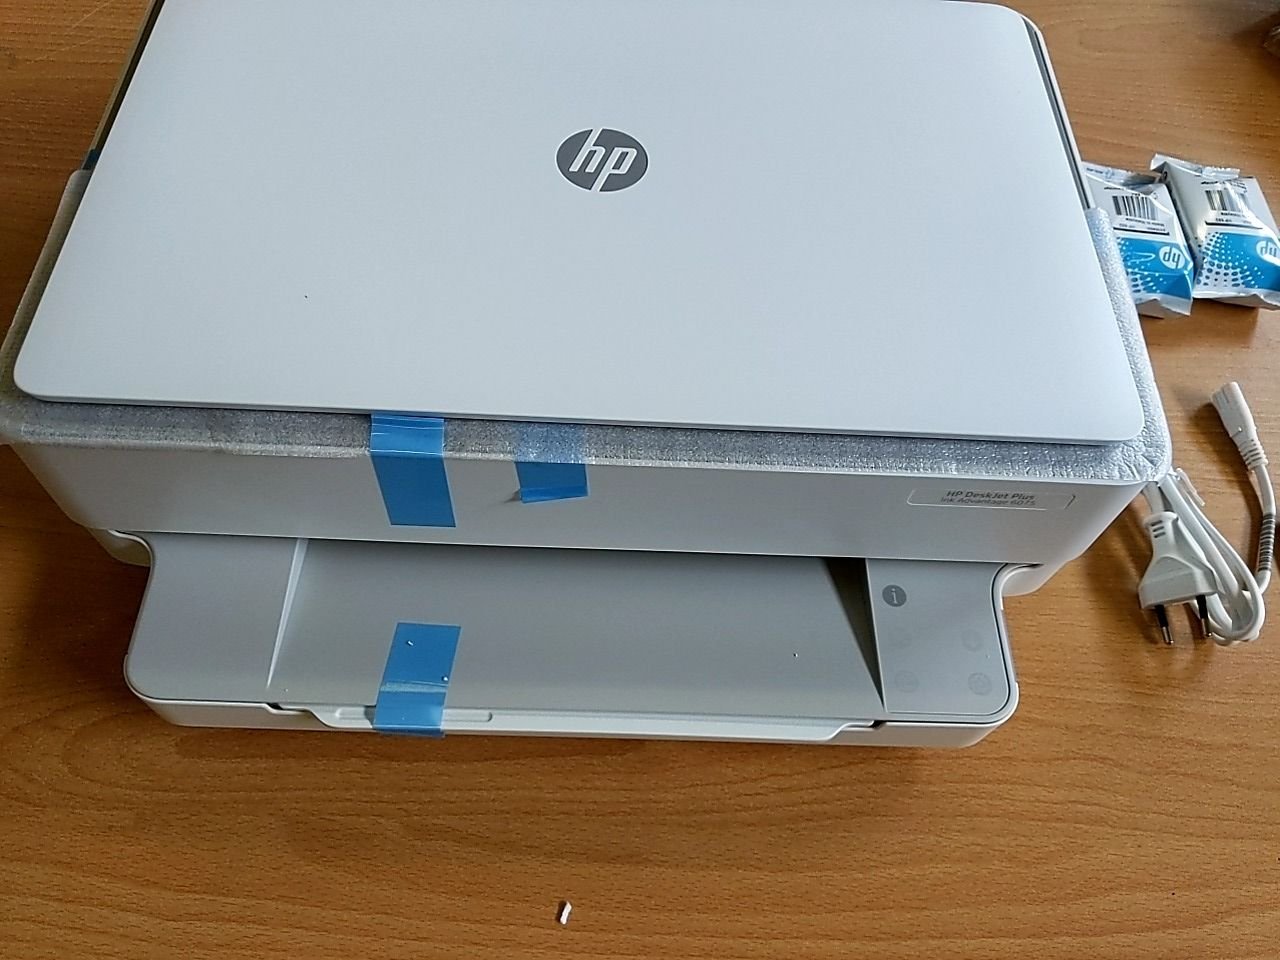 Multifunkční inkoustová tiskárna HP DeskJet Advantage 6075